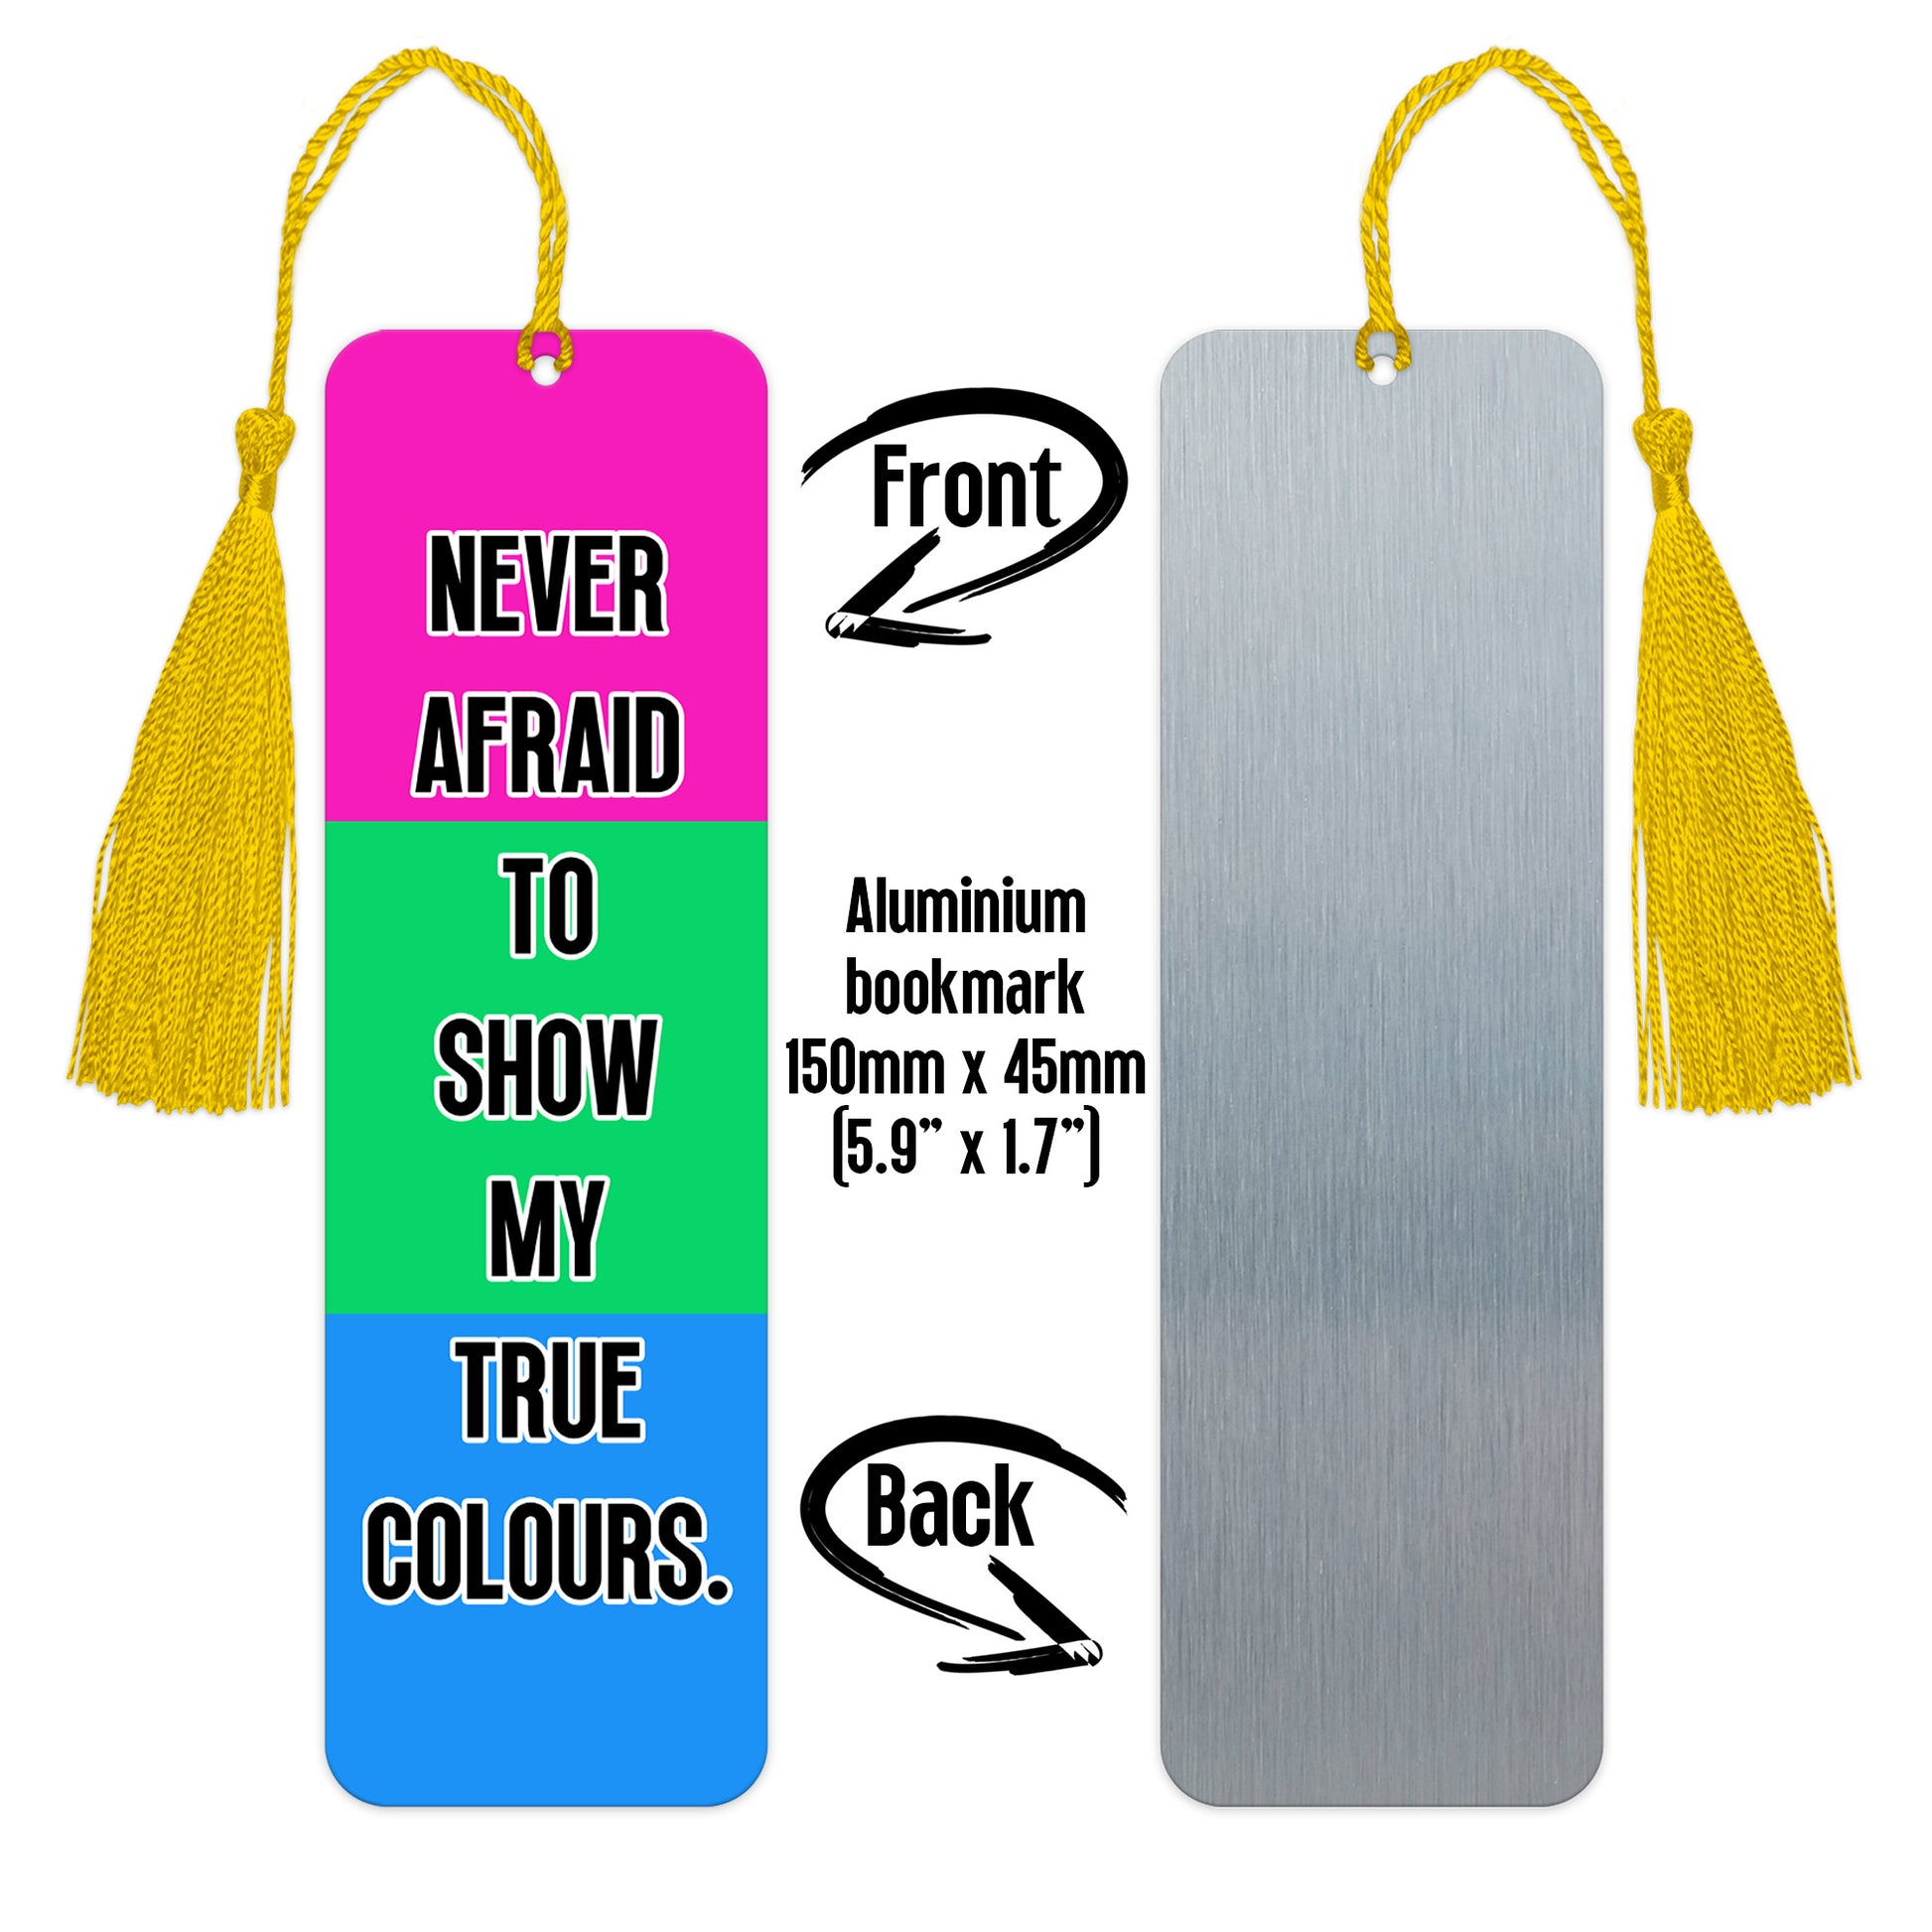 Polysexual pride luxury aluminium bookmark never afraid to show my true colours